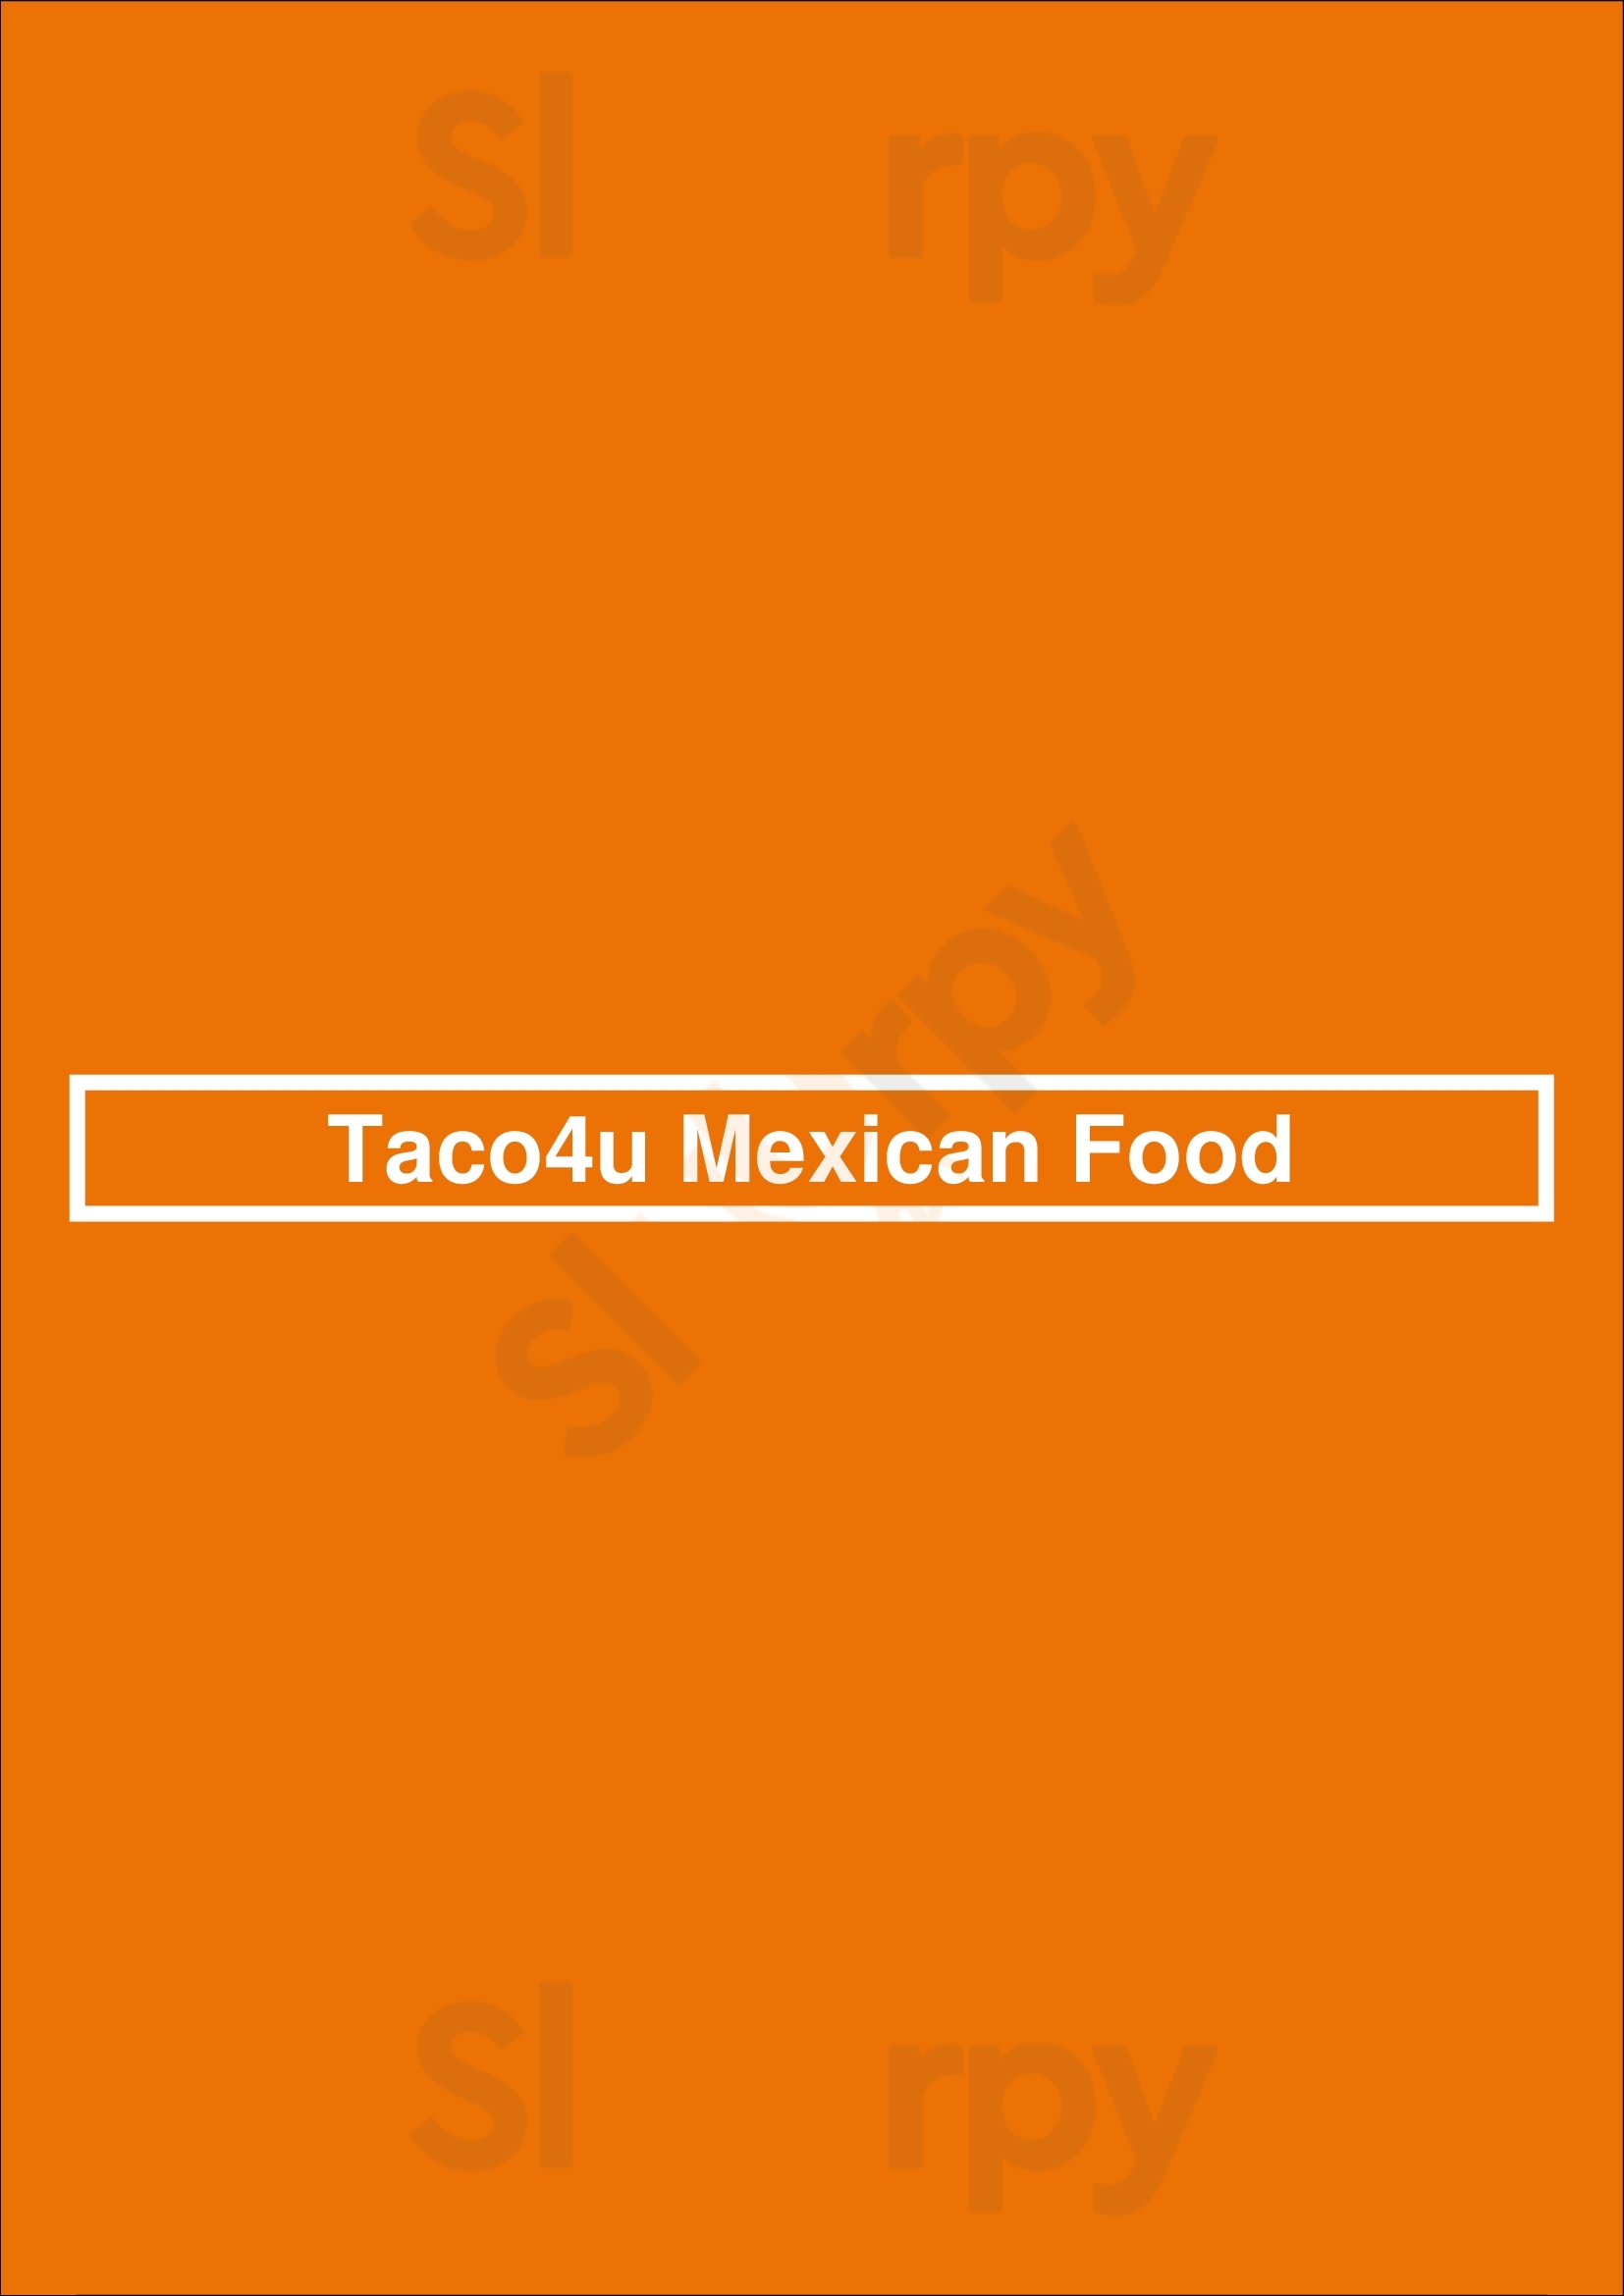 Taco4u Mexican Food Mesa Menu - 1